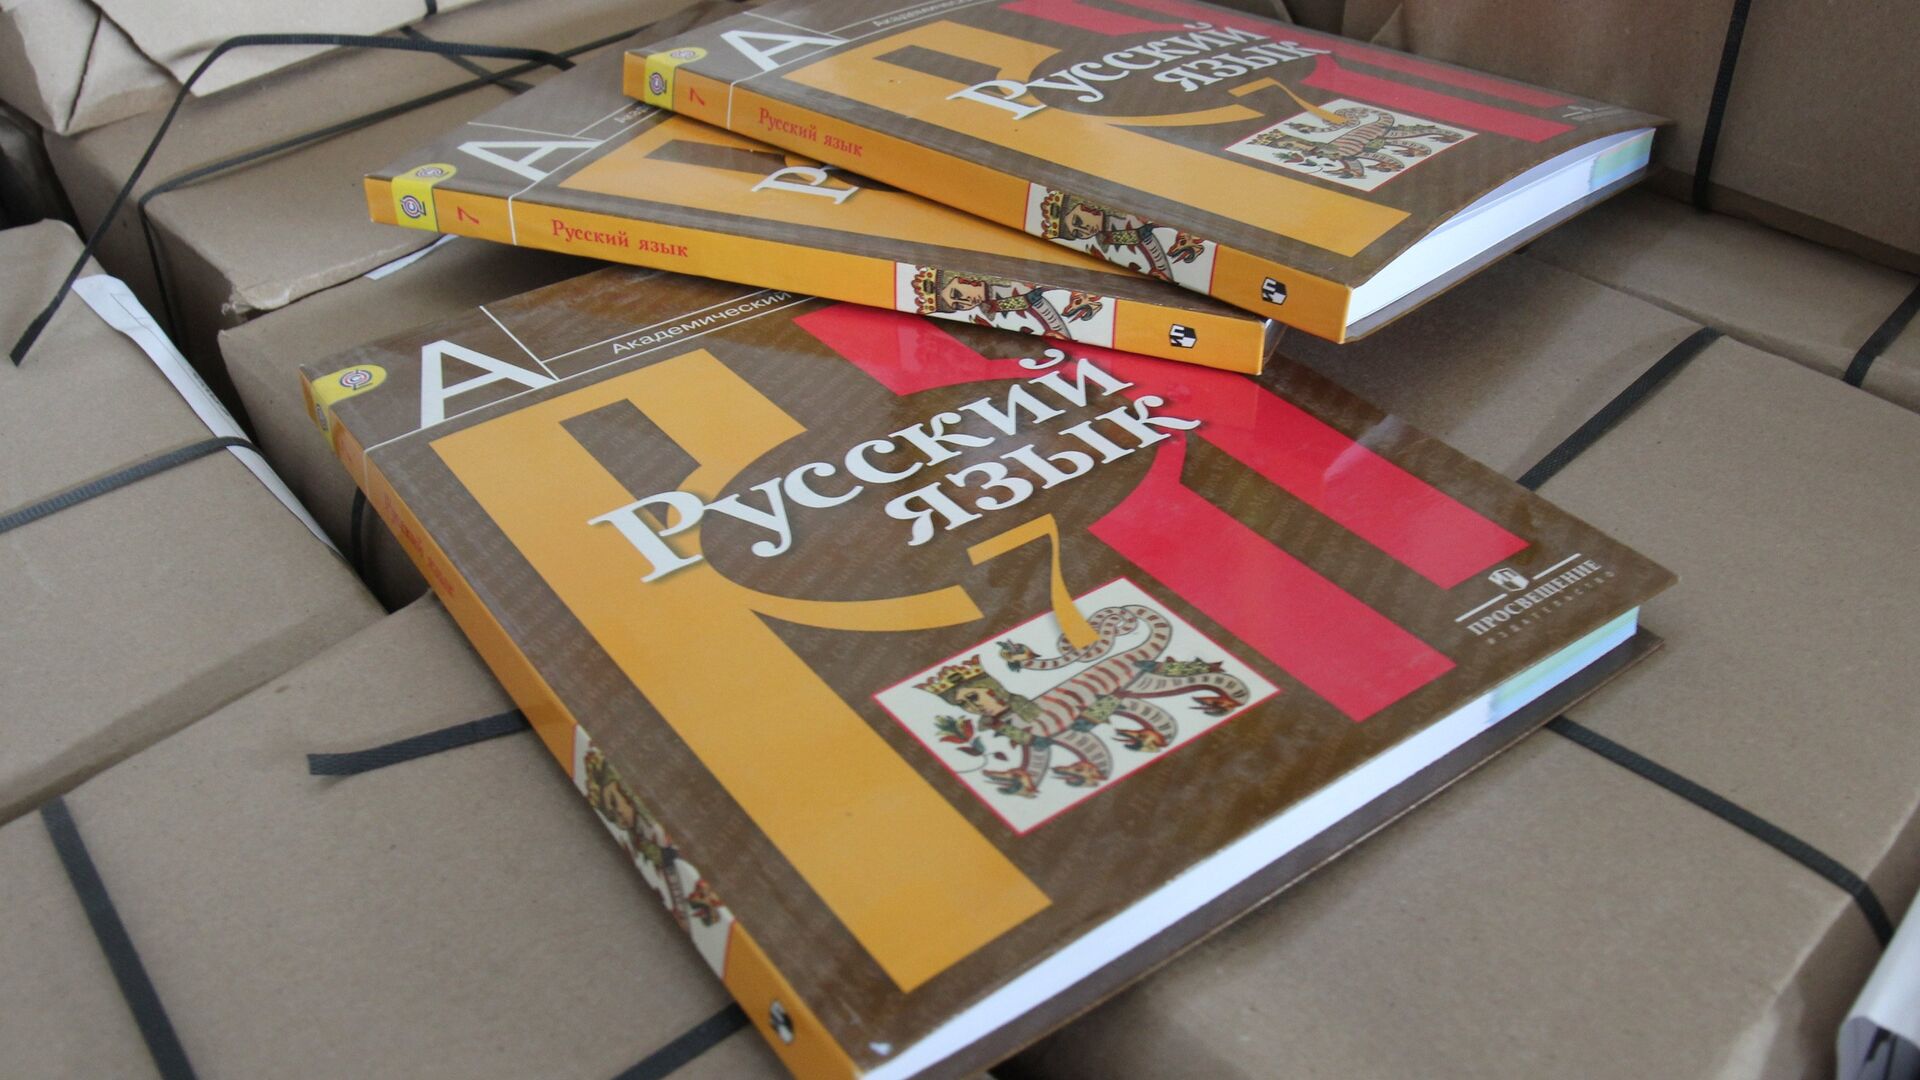 Последняя партия из 567 тысяч учебников для крымских школ прибыла в Симферополь - РИА Новости, 1920, 08.09.2017